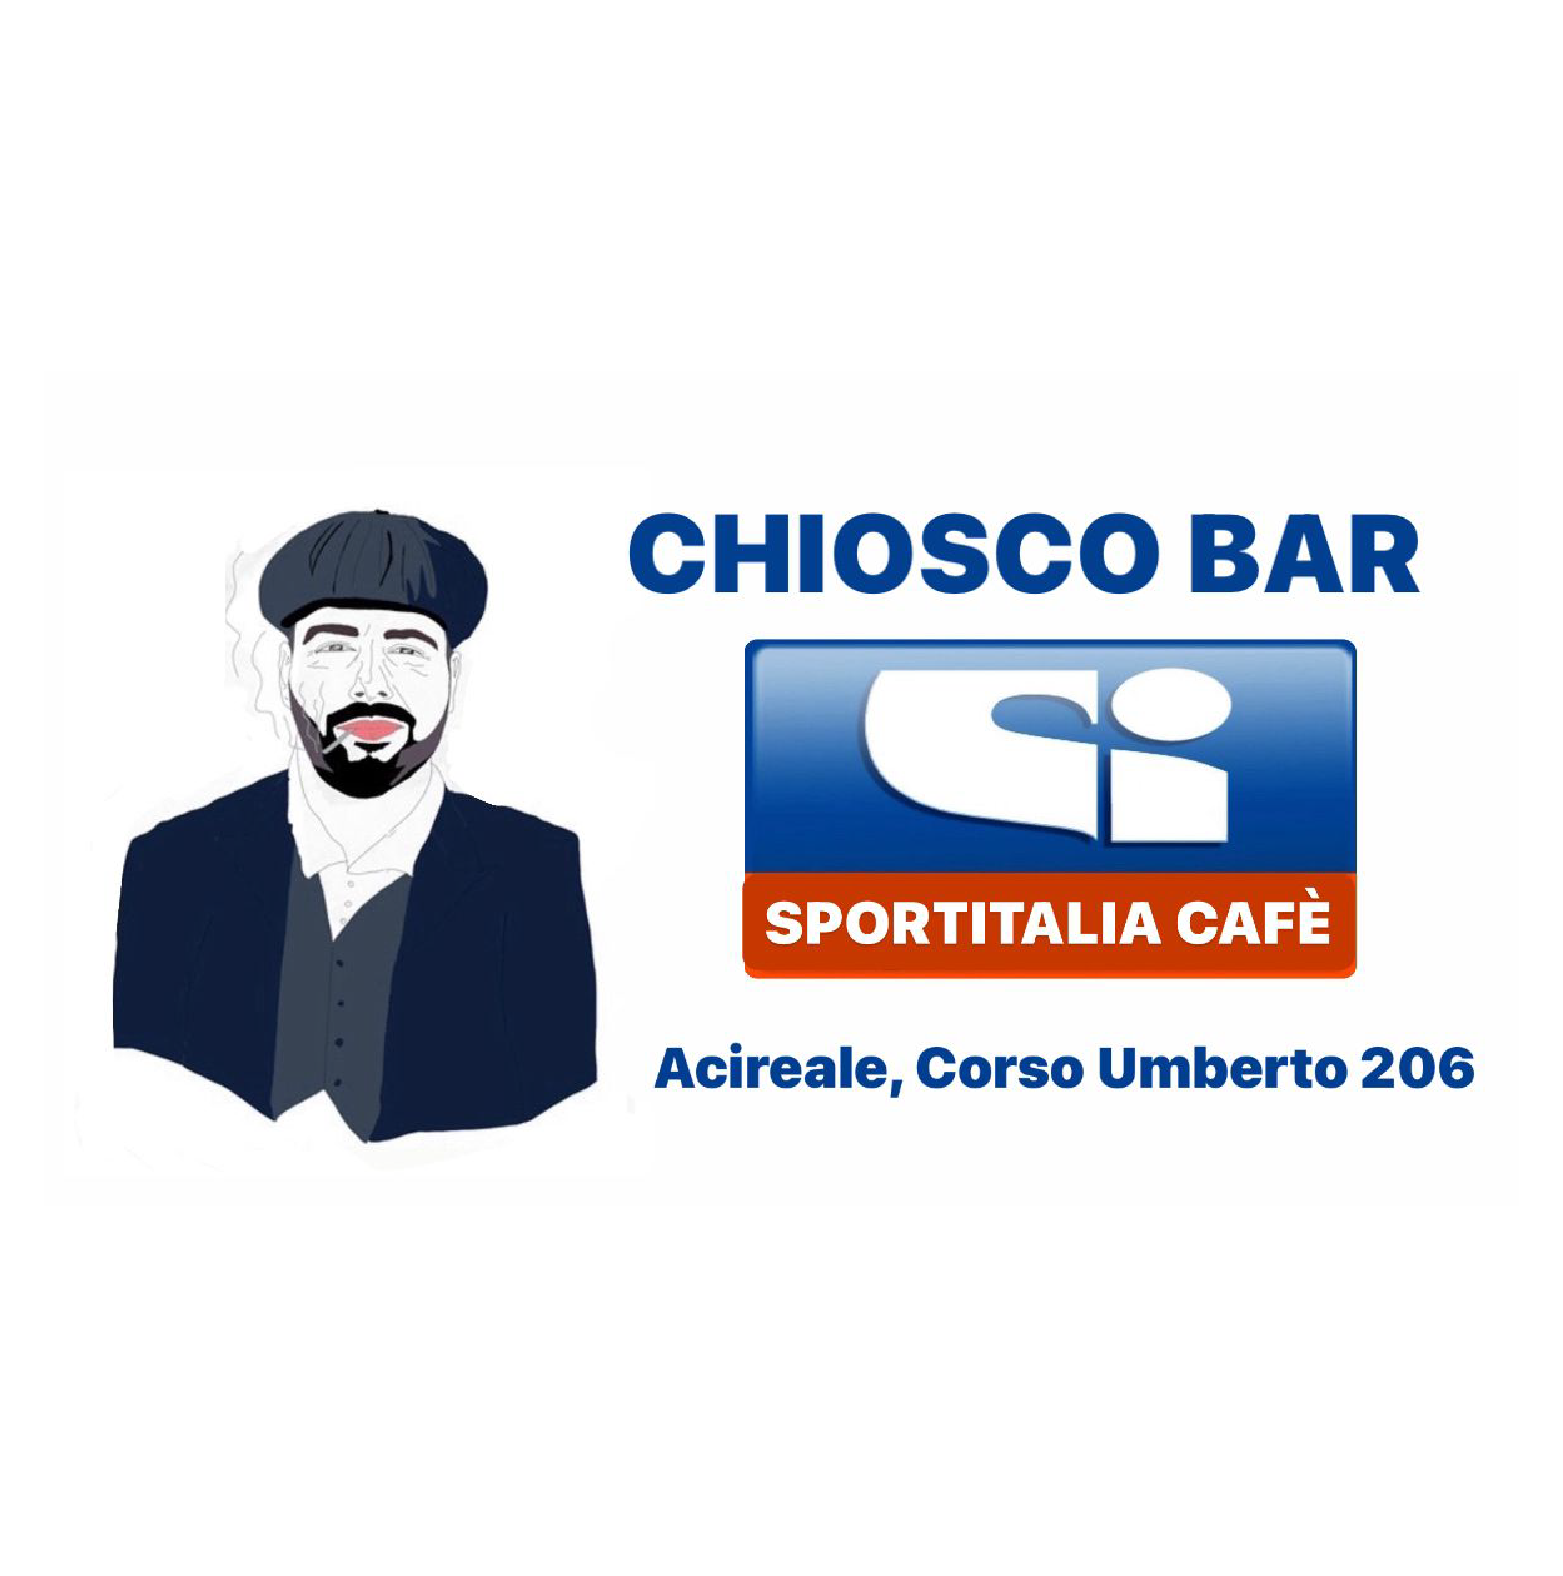 Chiosco bar Sportitalia Cafè